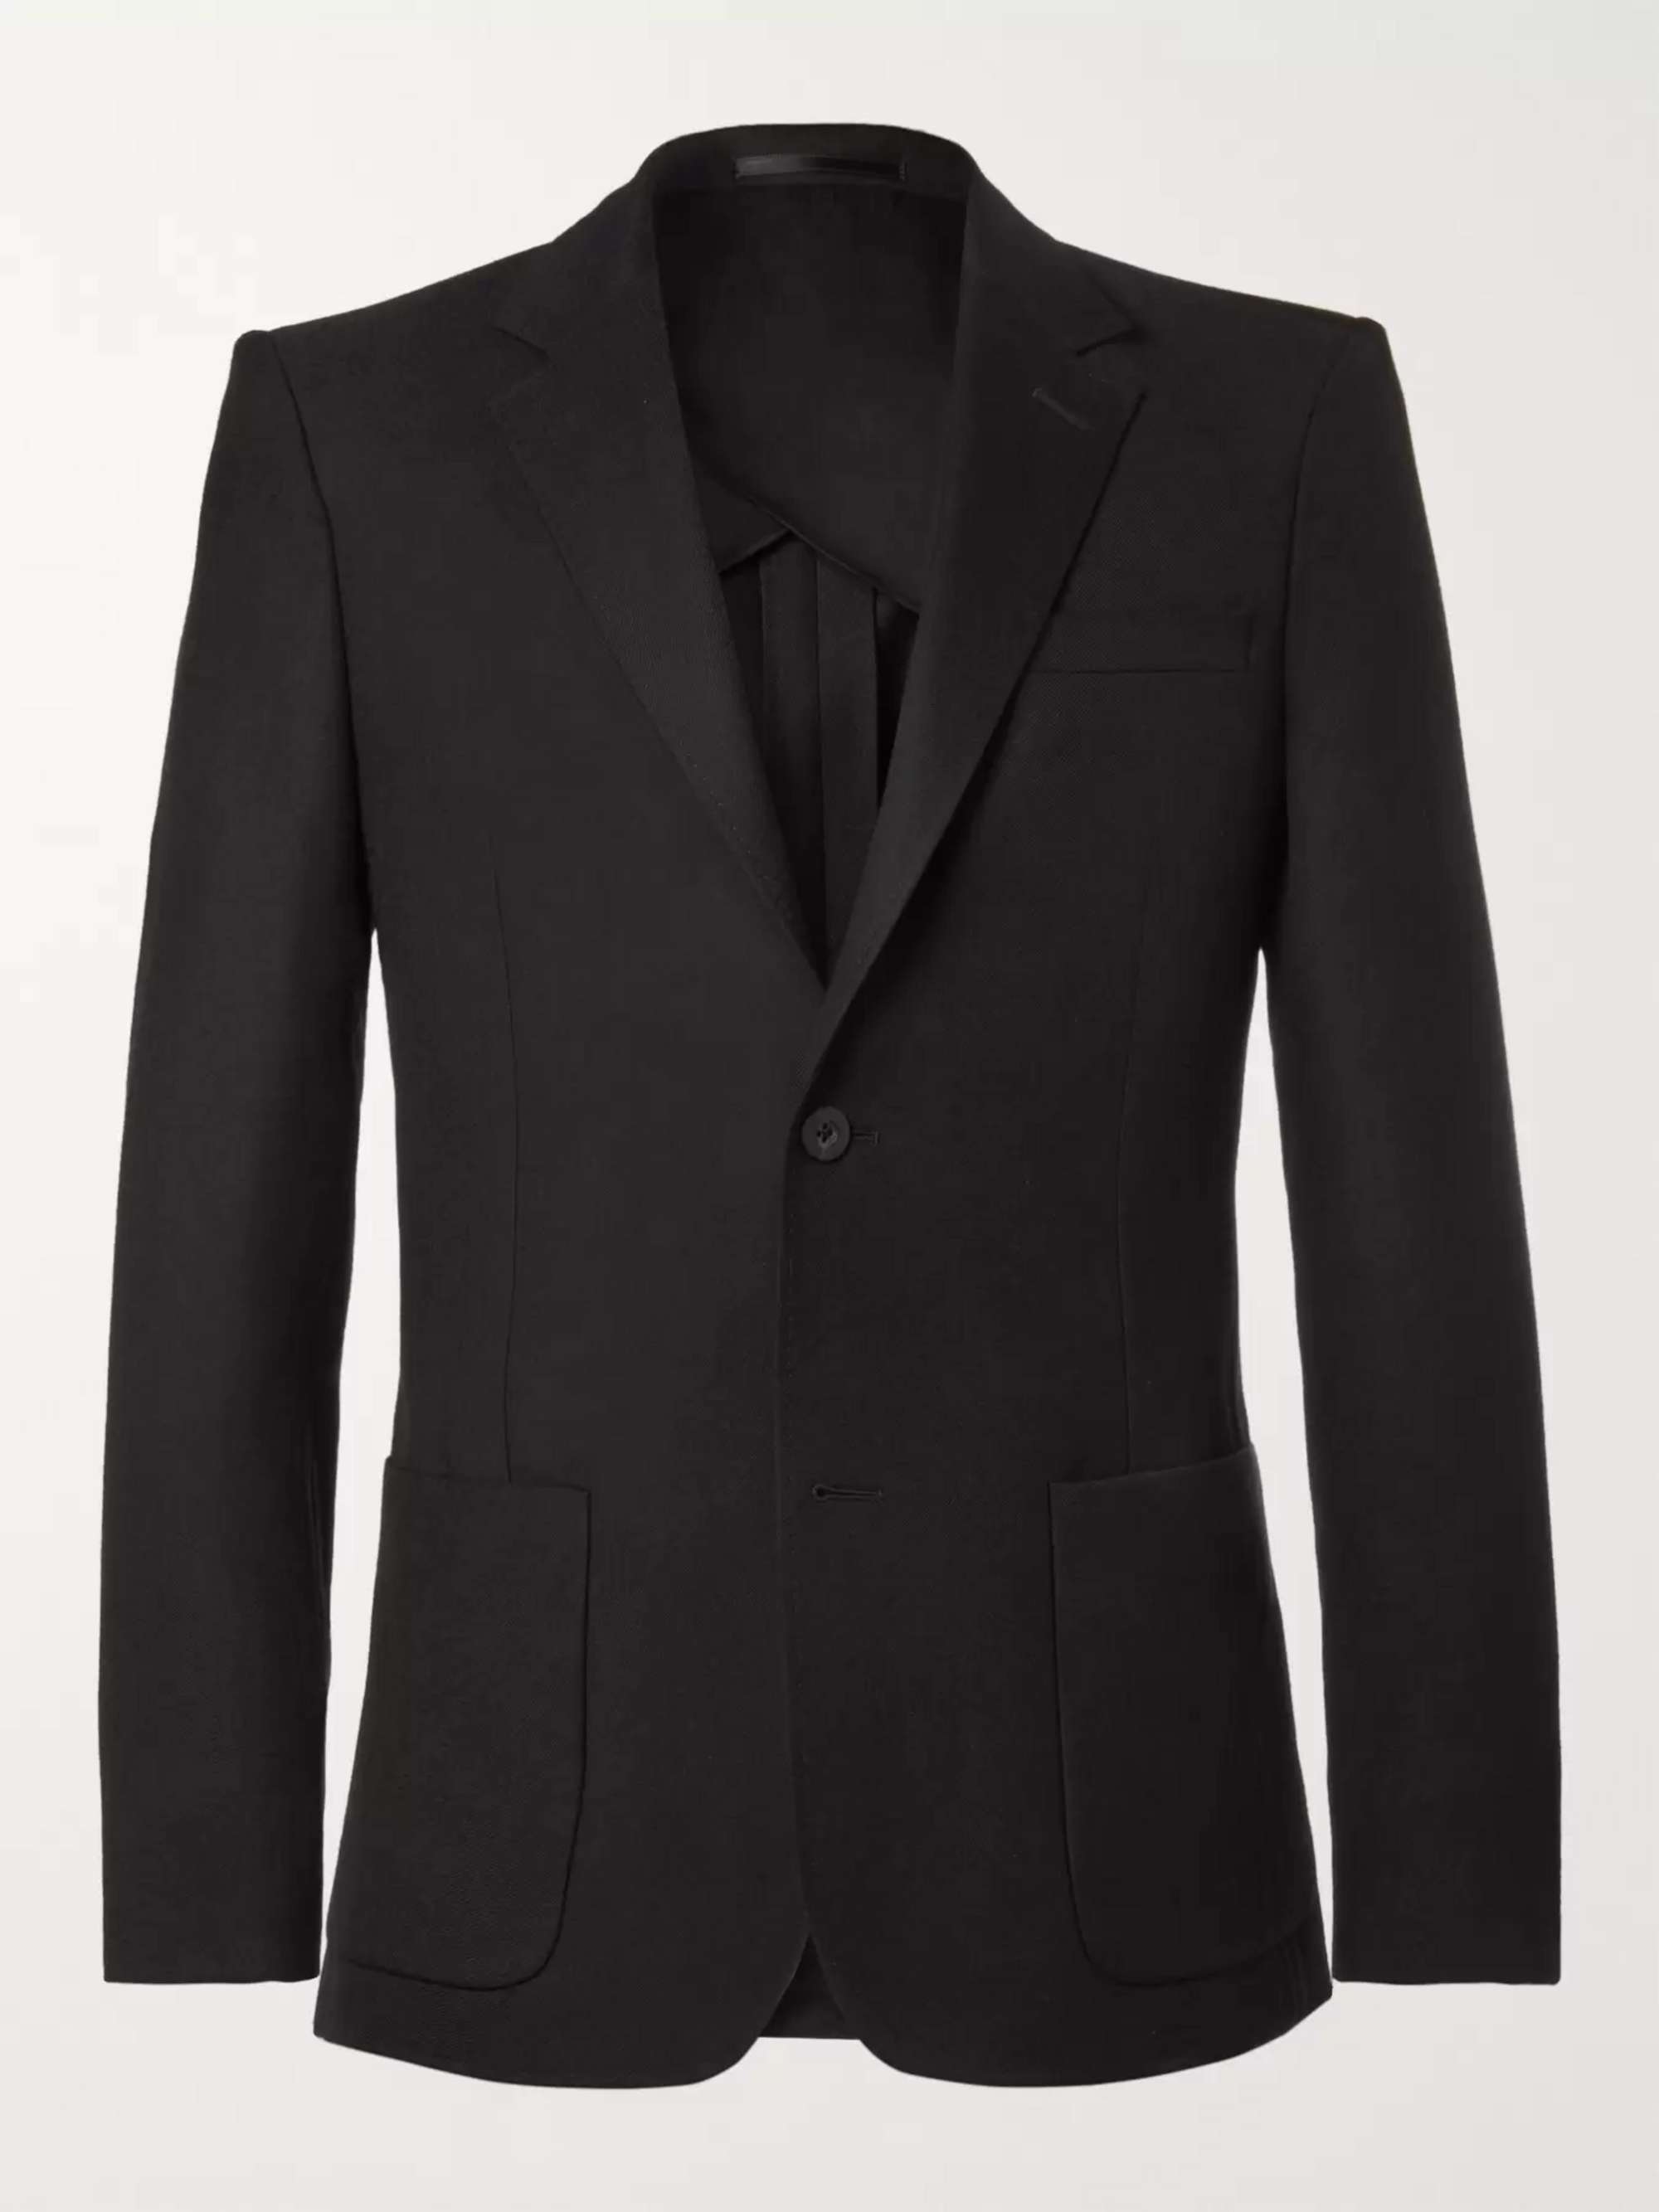 Men's Wear Black Blazer, 40% OFF